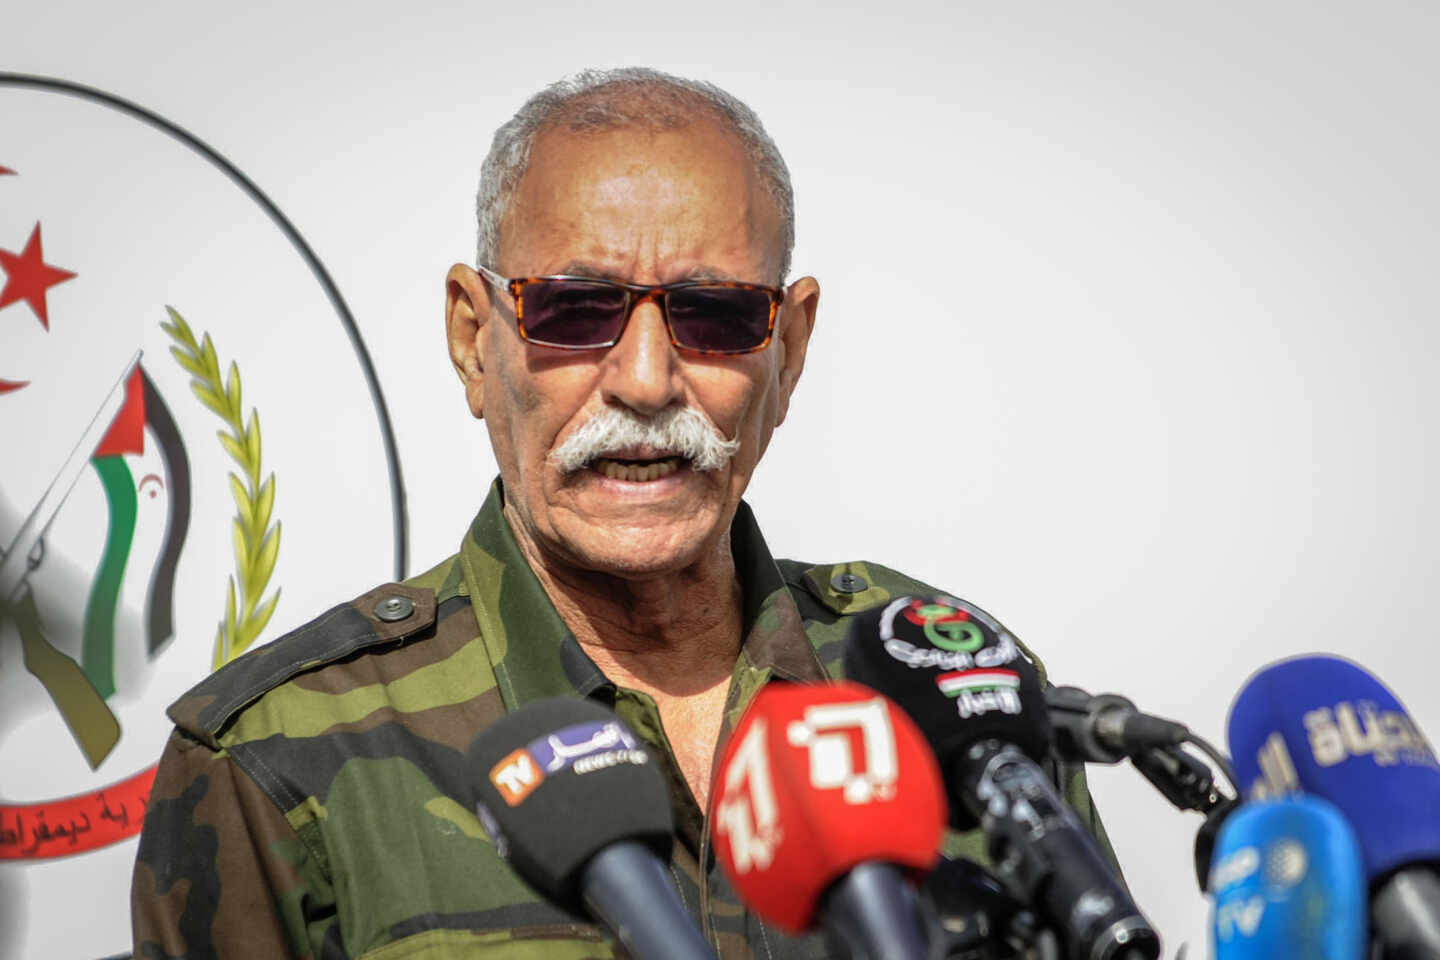 Piden adelantar la declaración del líder del Frente Polisario ante el riesgo de fuga